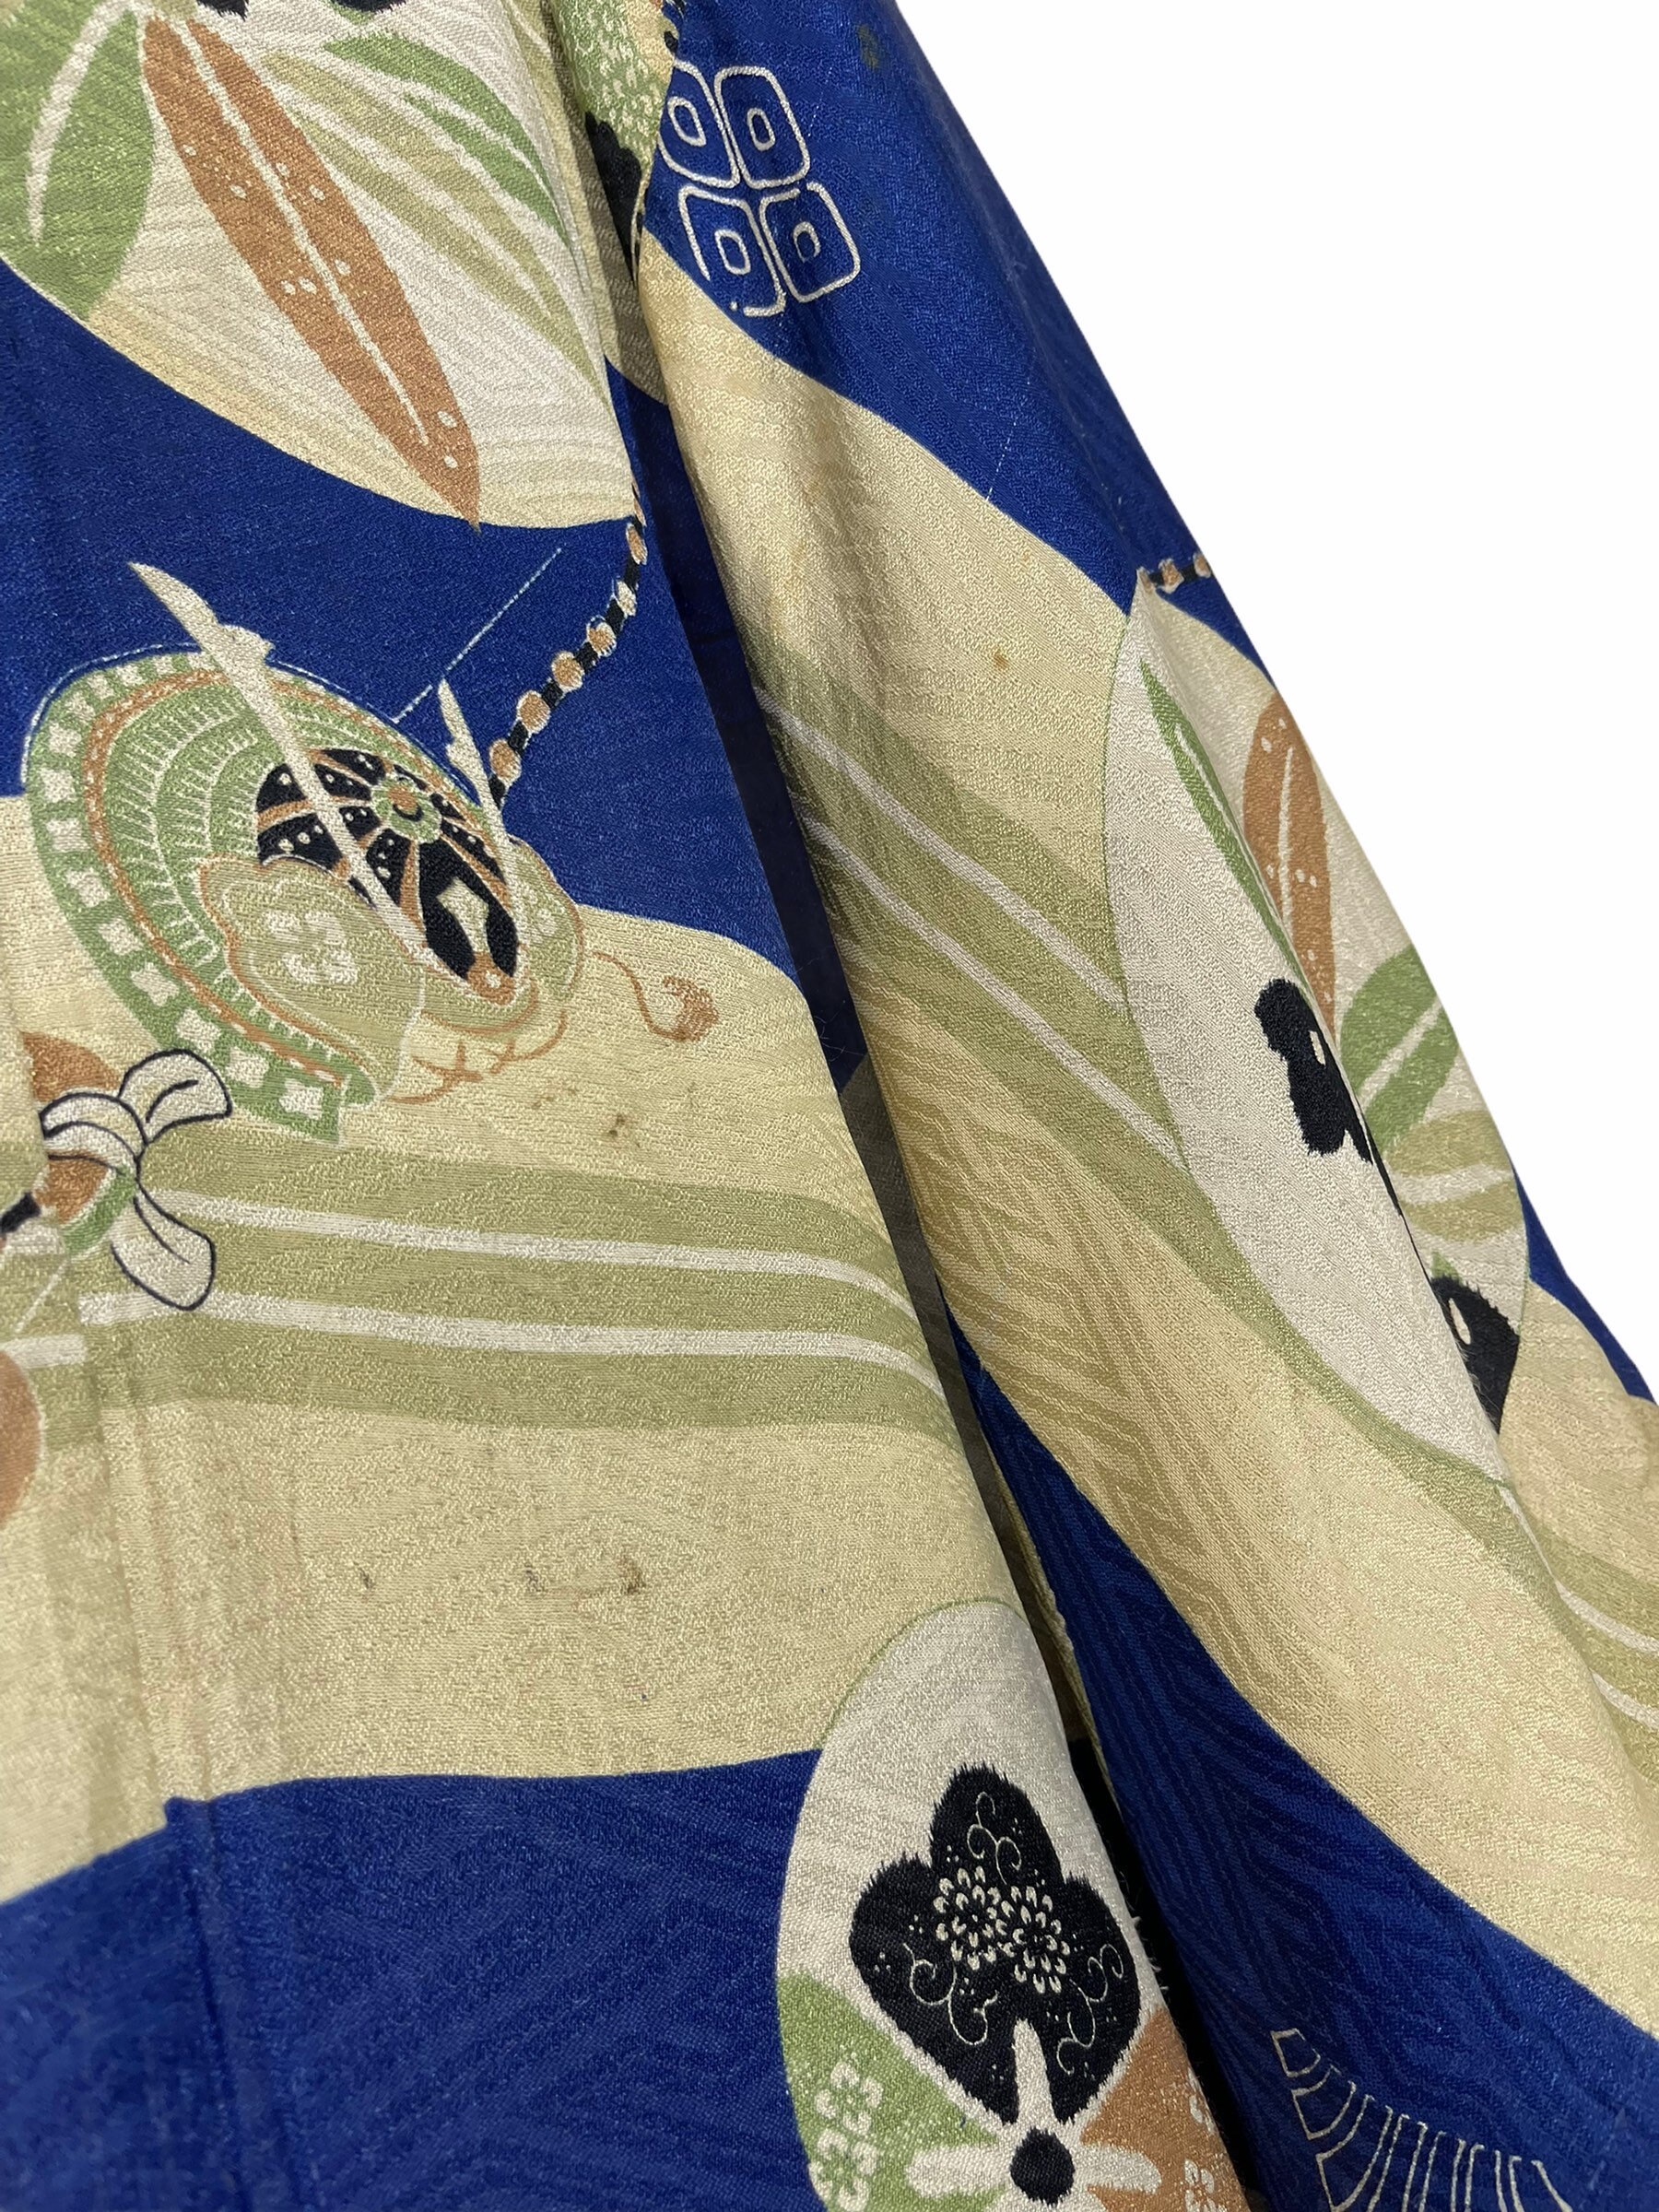 Made in Japan Vintage Juban Kimono Silk Japanese Pattern | Etsy